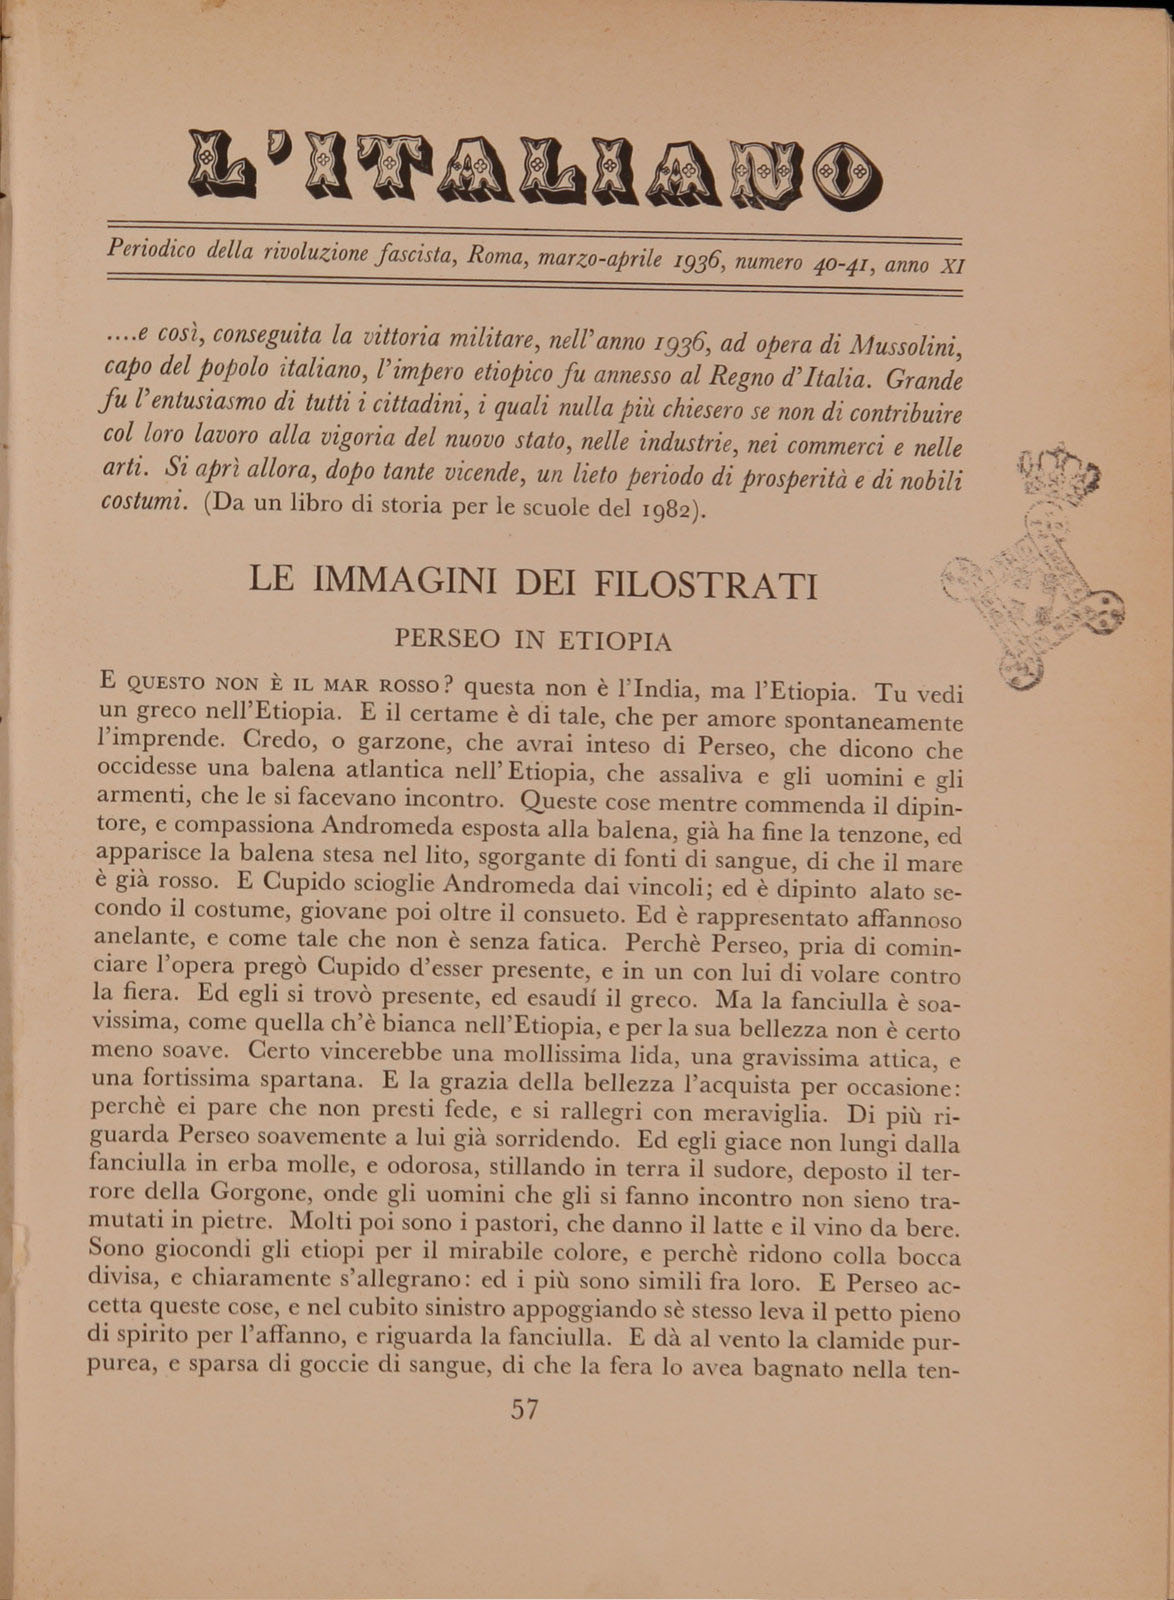 L'Italiano - 11 (1936), n. 40-41, p. 81